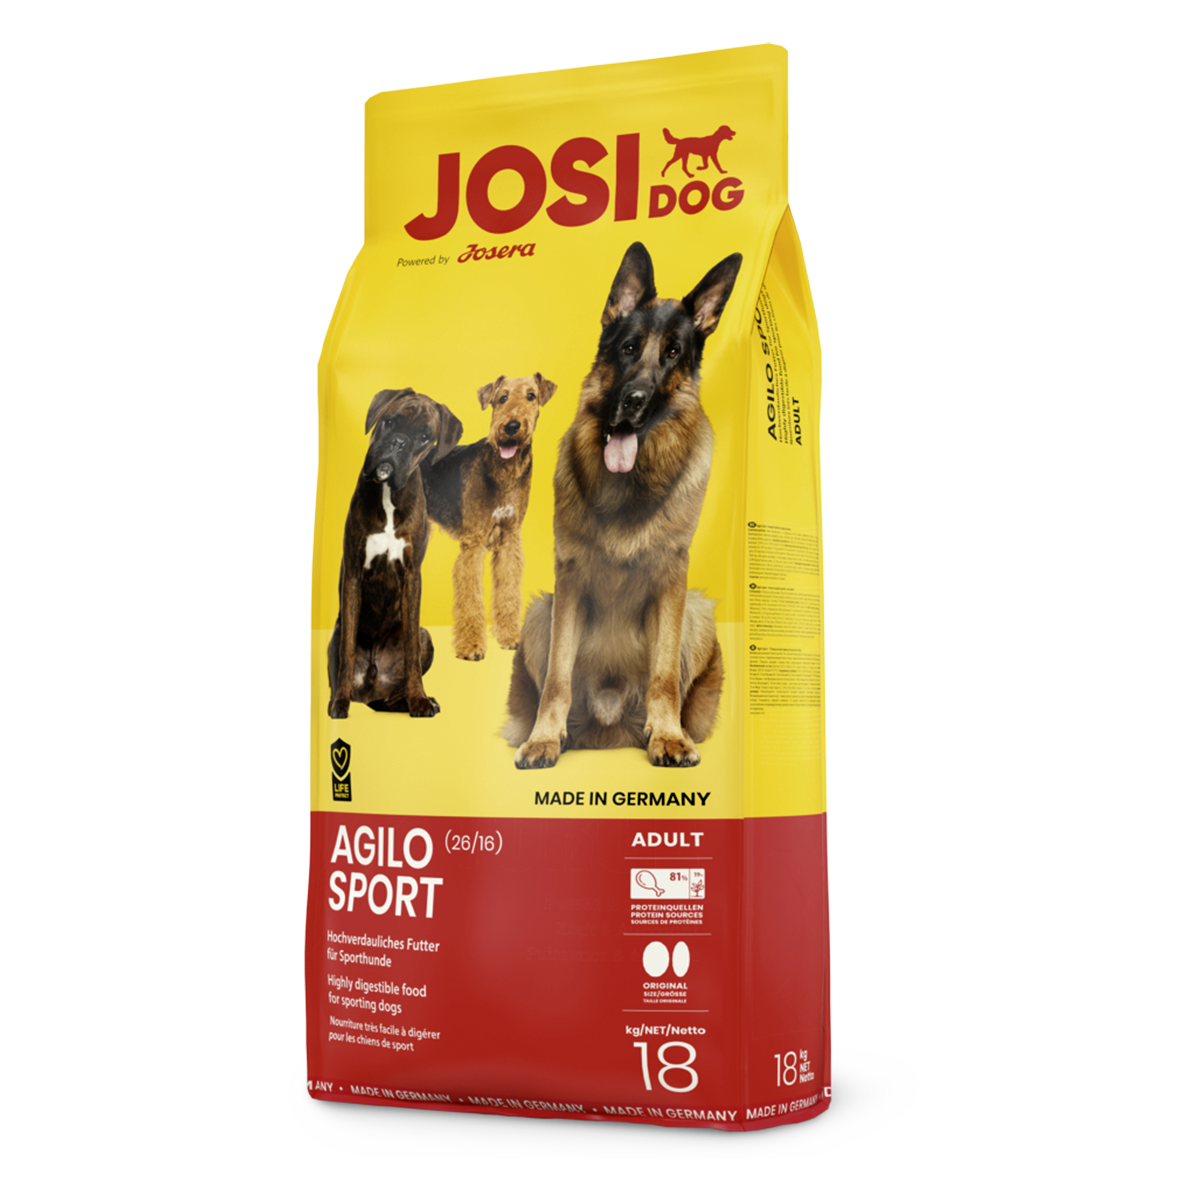 Josera JosiDog Agilo Sport 26/16, 18 кг - корм Йозера для спортивных и активных собак